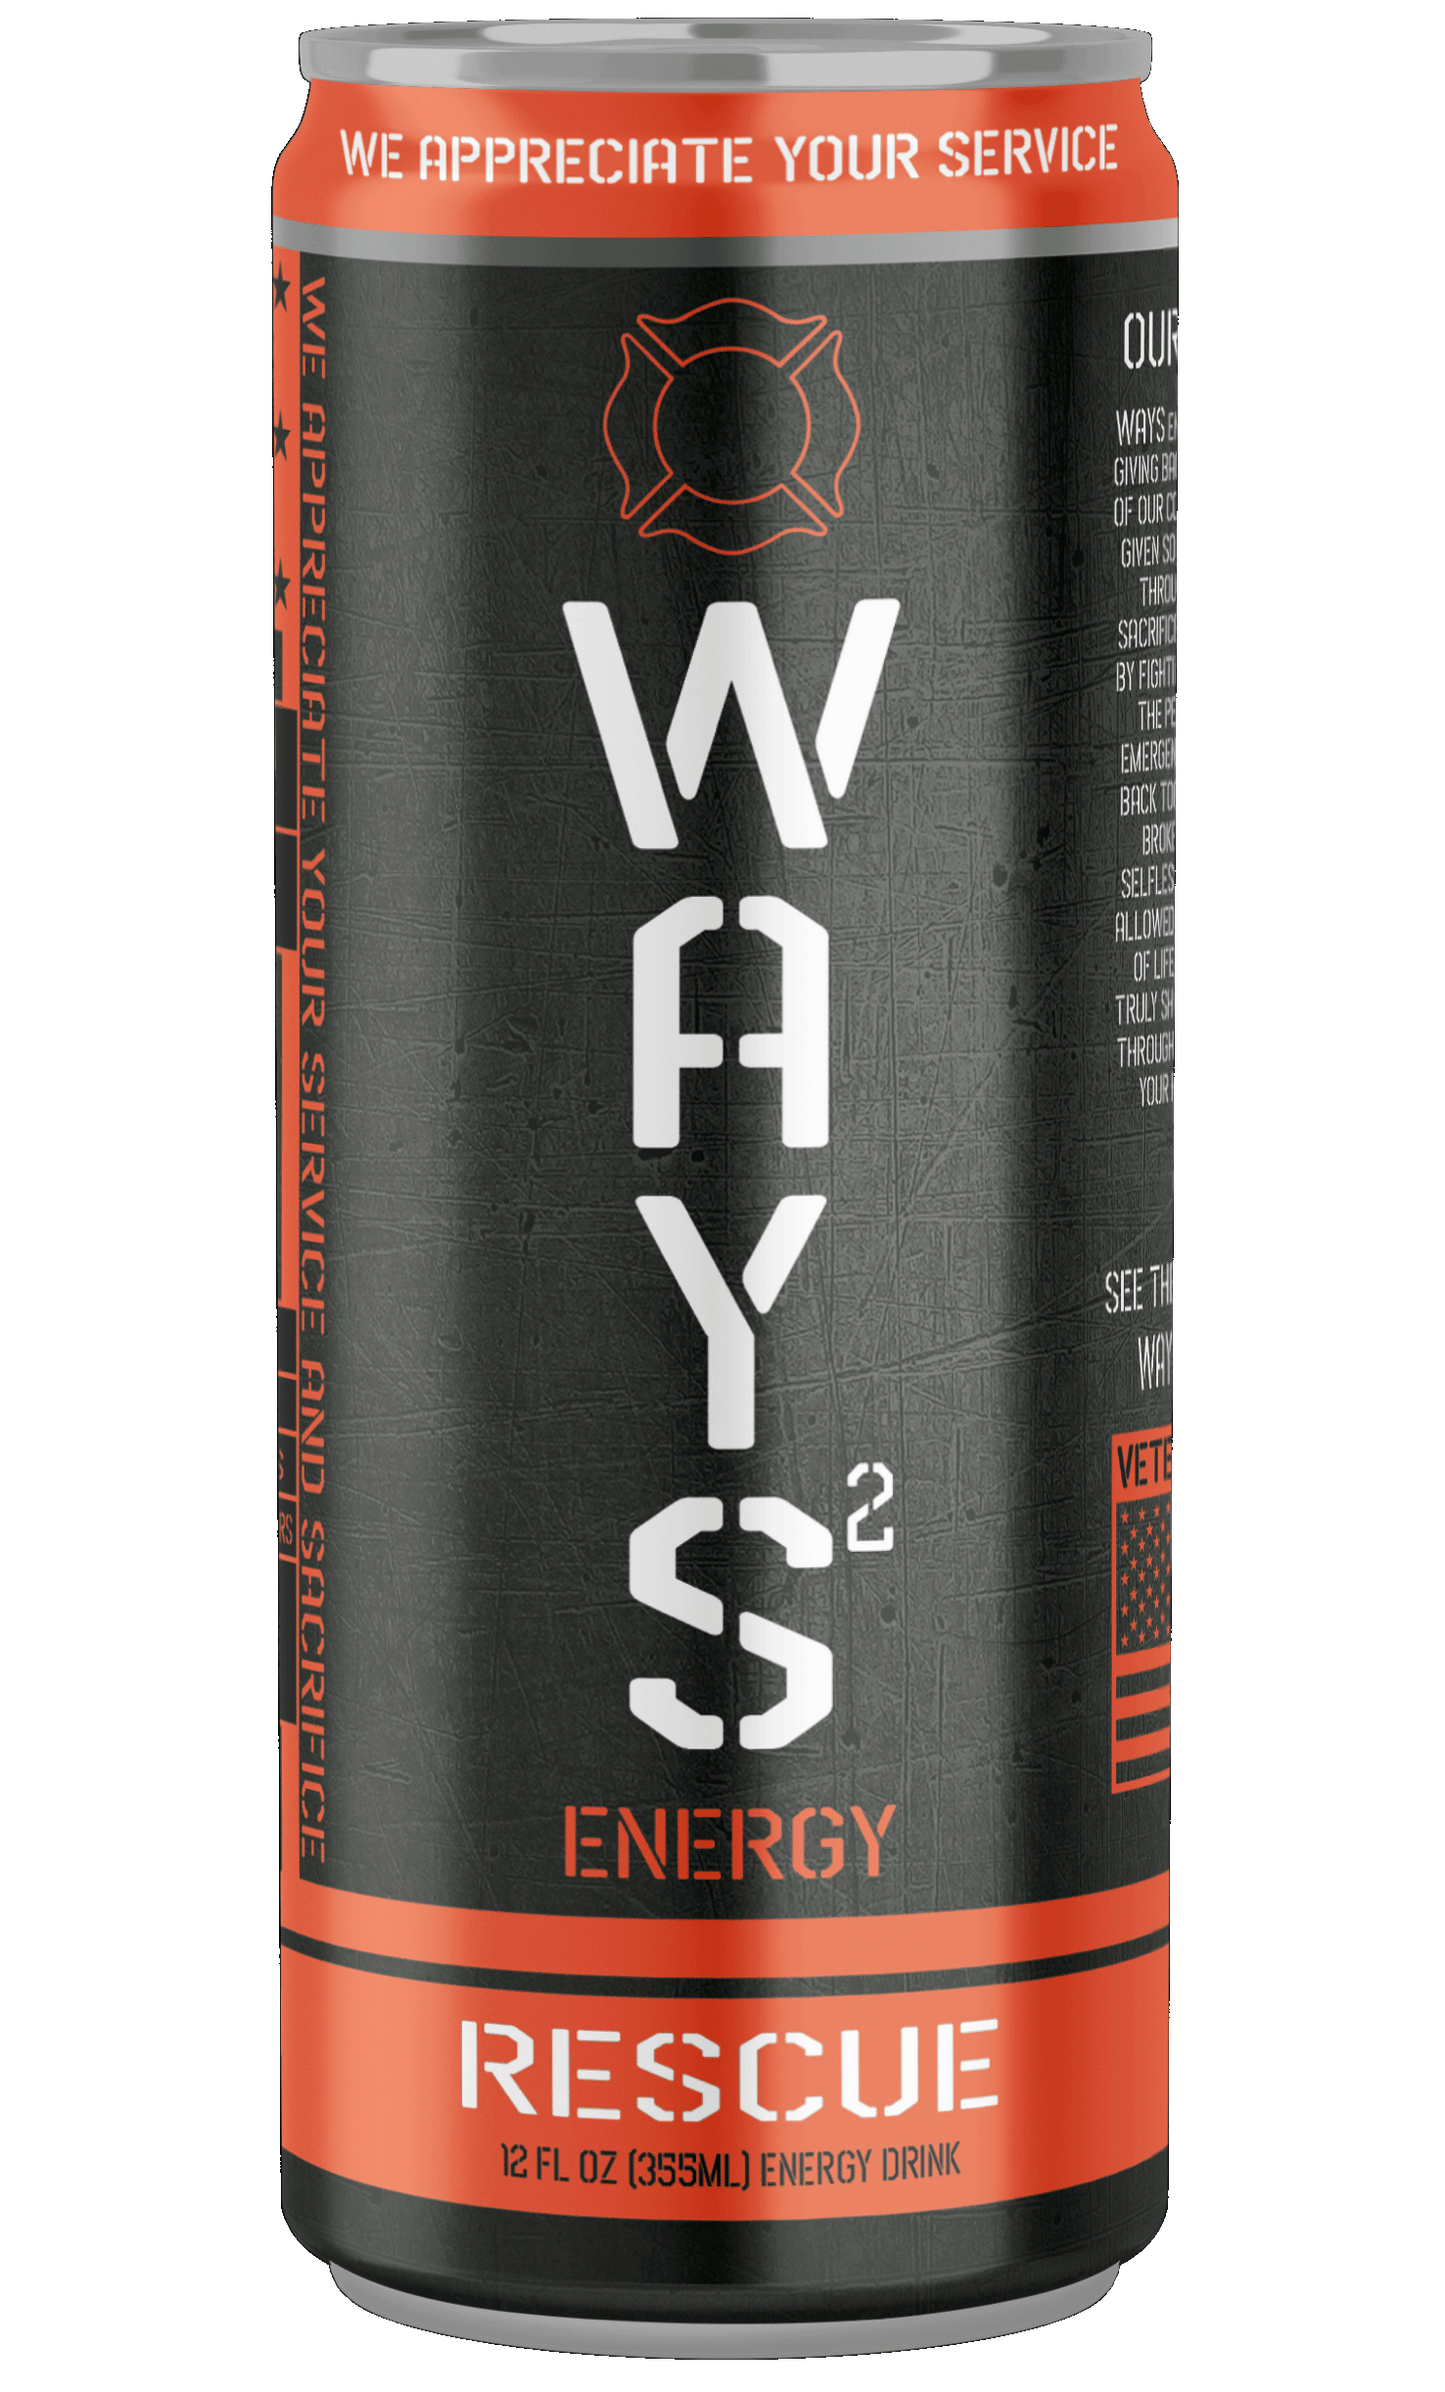 Energy Drink Pack | 4 Flavor Energy Drinks | WAYS Energy